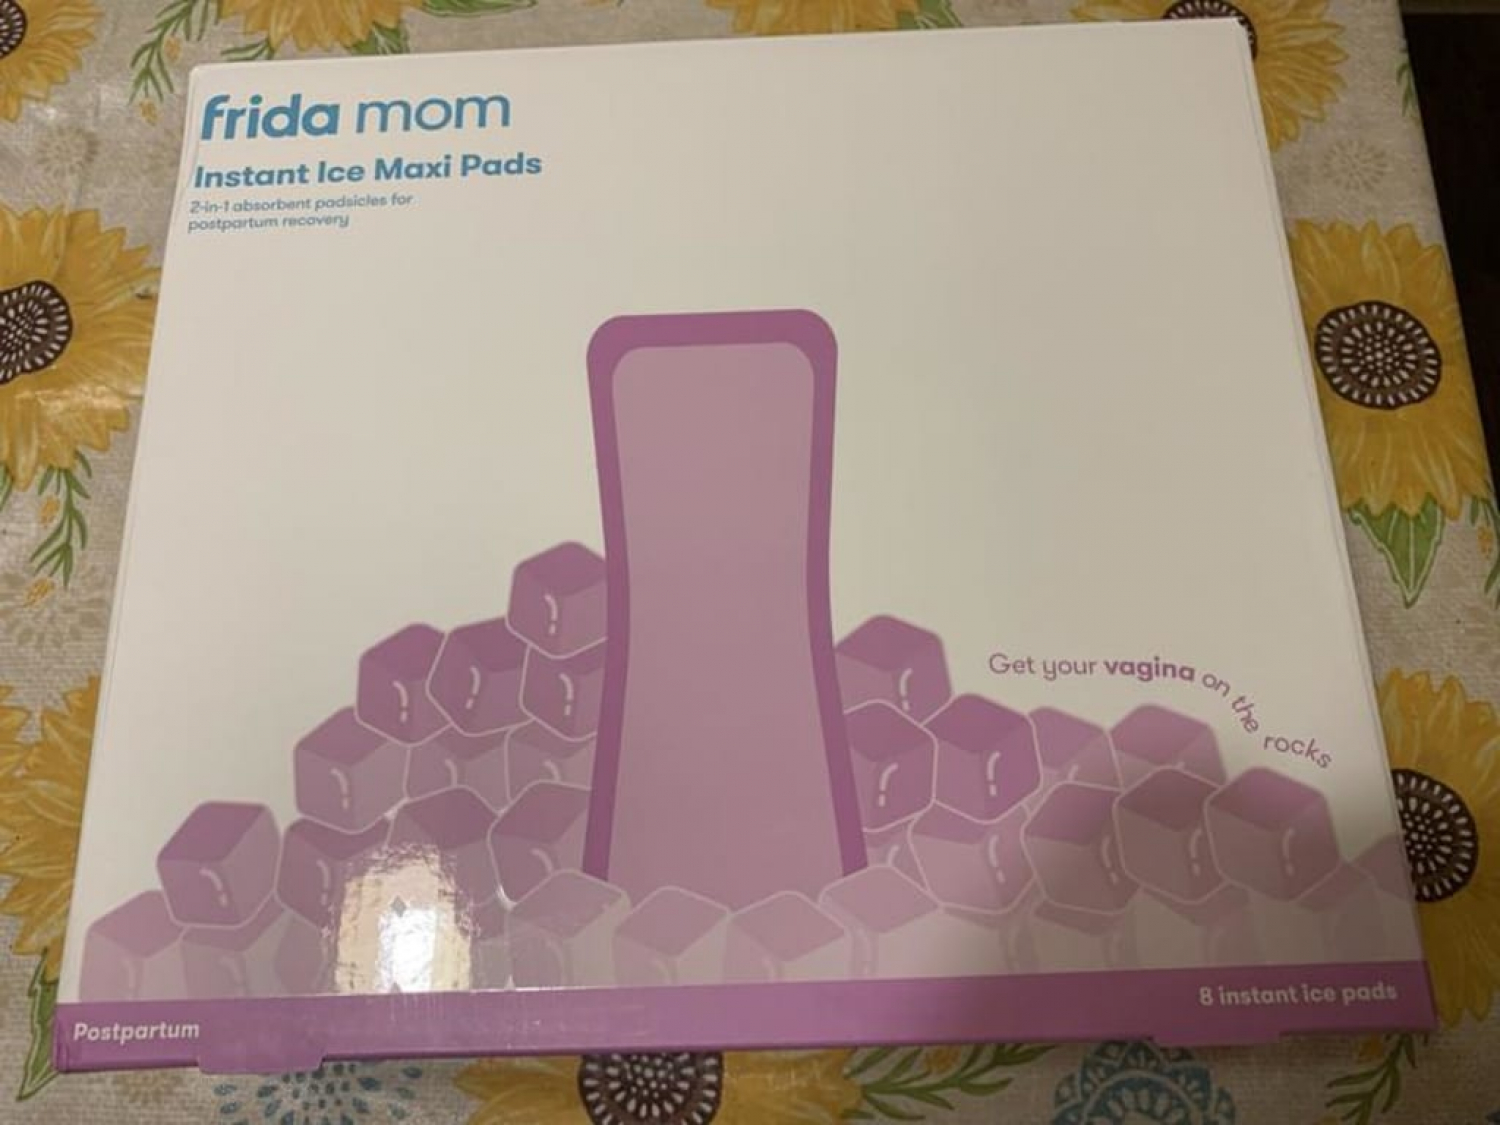 Frida Mom 2-in-1 Postpartum Absorbent Postpartum Perineal Ice Maxi